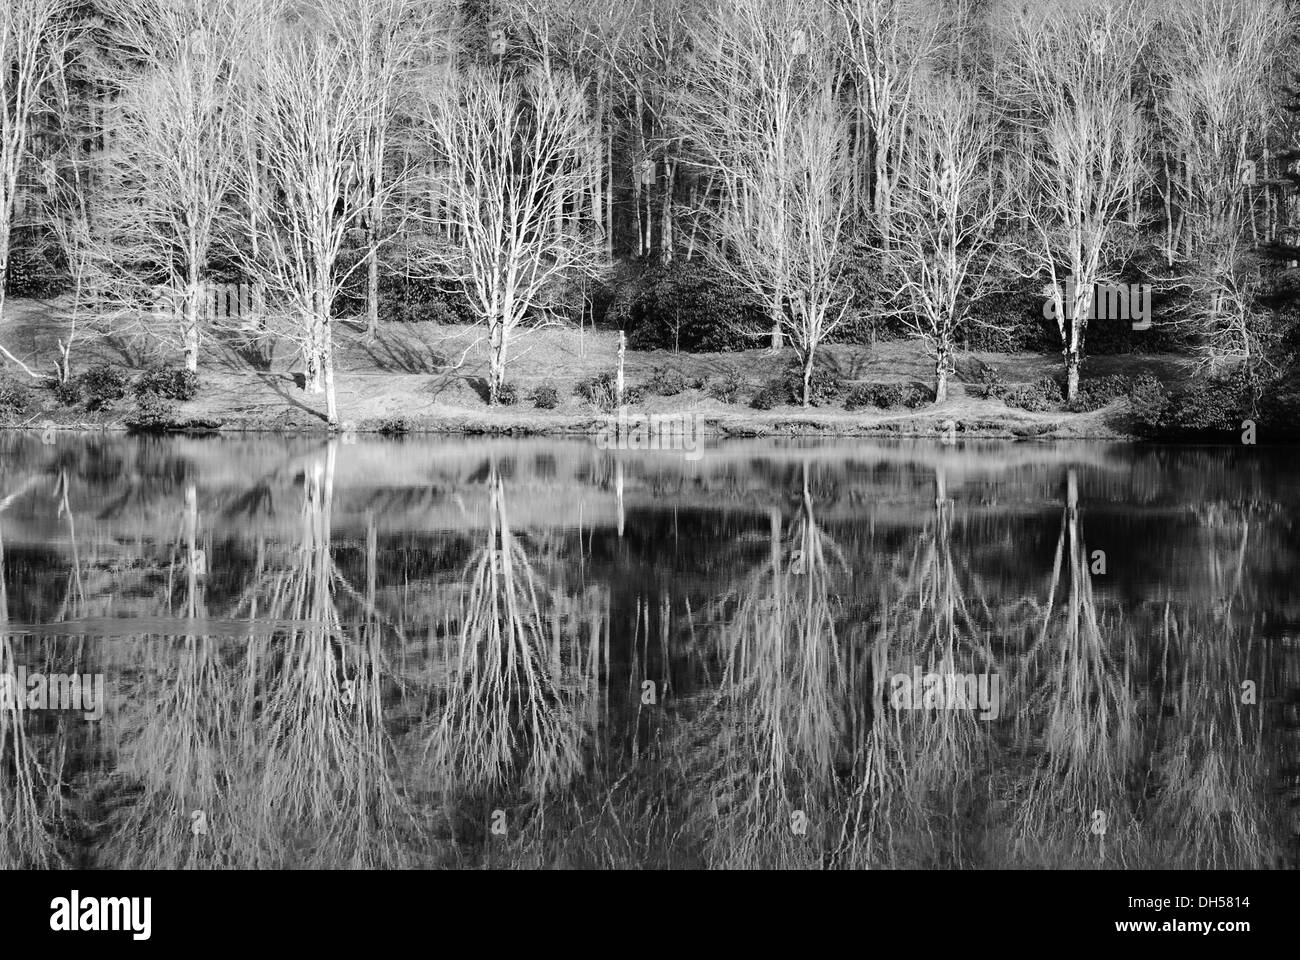 Photographie en noir et blanc d'un lac en hiver Banque D'Images